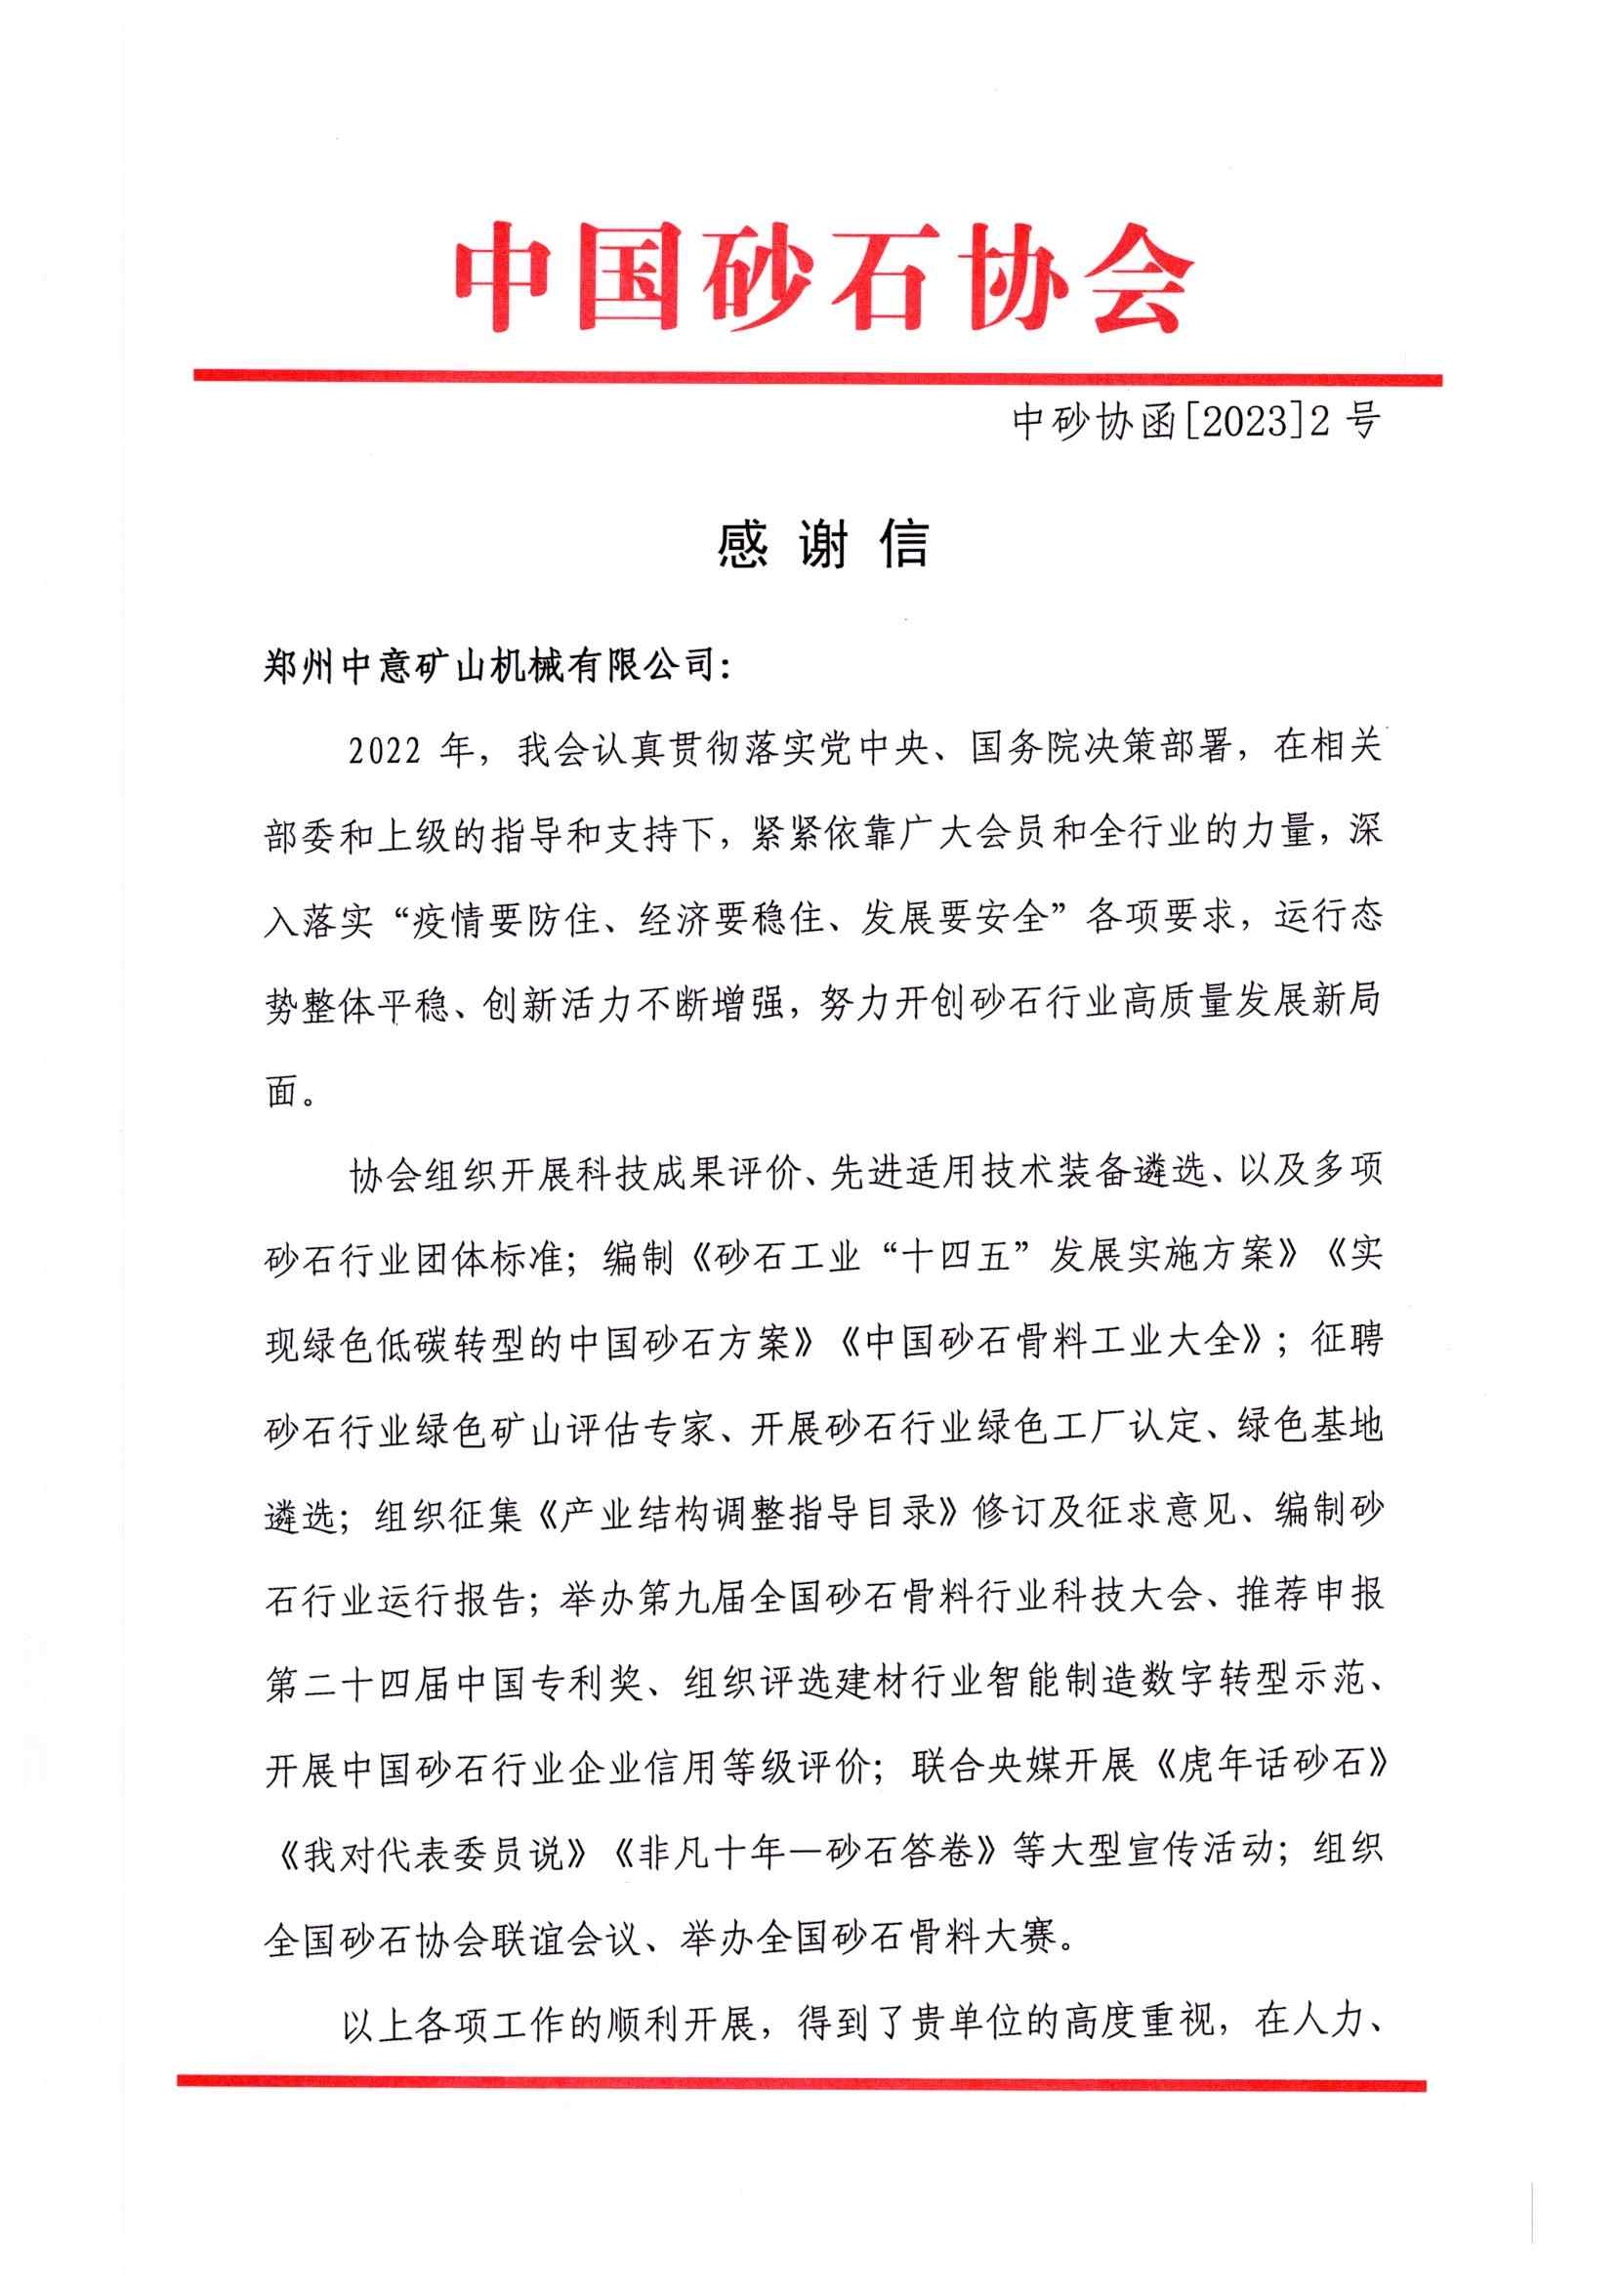 感谢信|中国砂石协会向郑州中意矿山有限公司发来感谢信